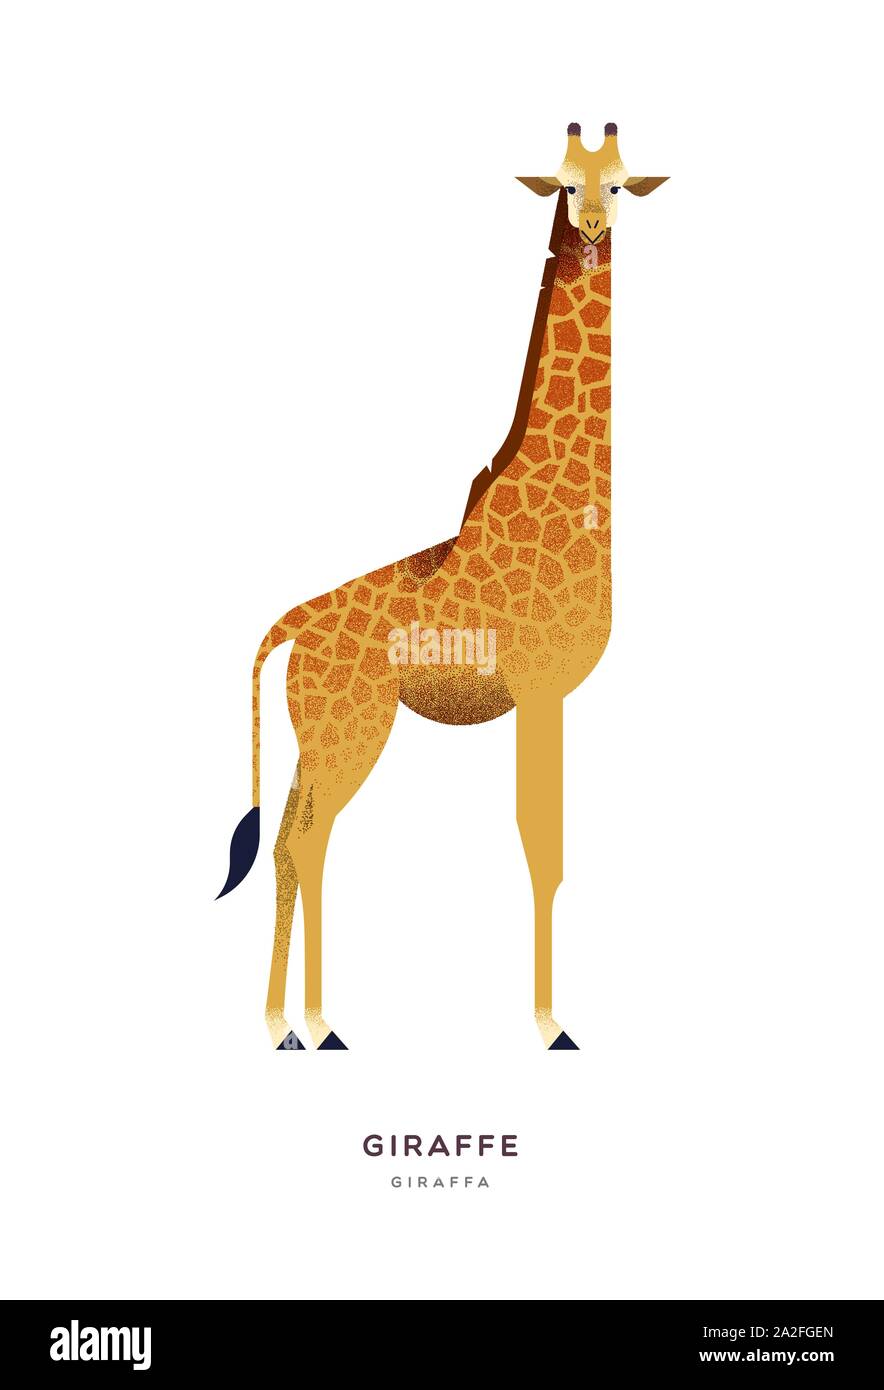 Afrikanische giraffe Abbildung auf isoliert weißer Hintergrund, Zoo oder Safari animal Konzept. Pädagogische wildlife Design mit Pflanzenarten Name Label. Stock Vektor